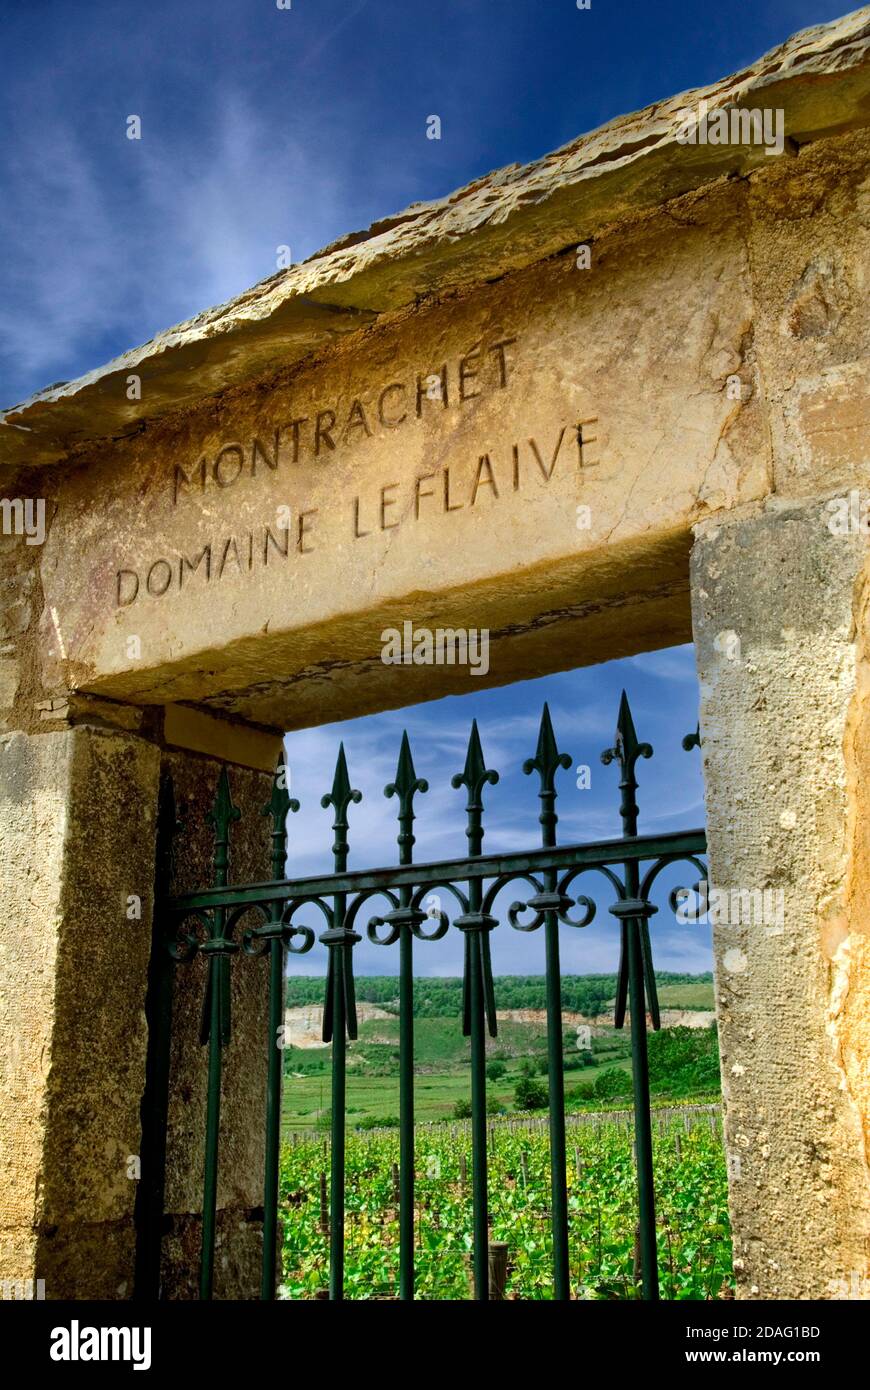 DOMAINE LEFLAIVE GRAND CRU VIGNETO pietra ingresso a Domaine Leflaive Venerata tenuta di Borgogna 'LE MONTRACHET' a Puligny-Montrachet Cote d'Or Francia Foto Stock